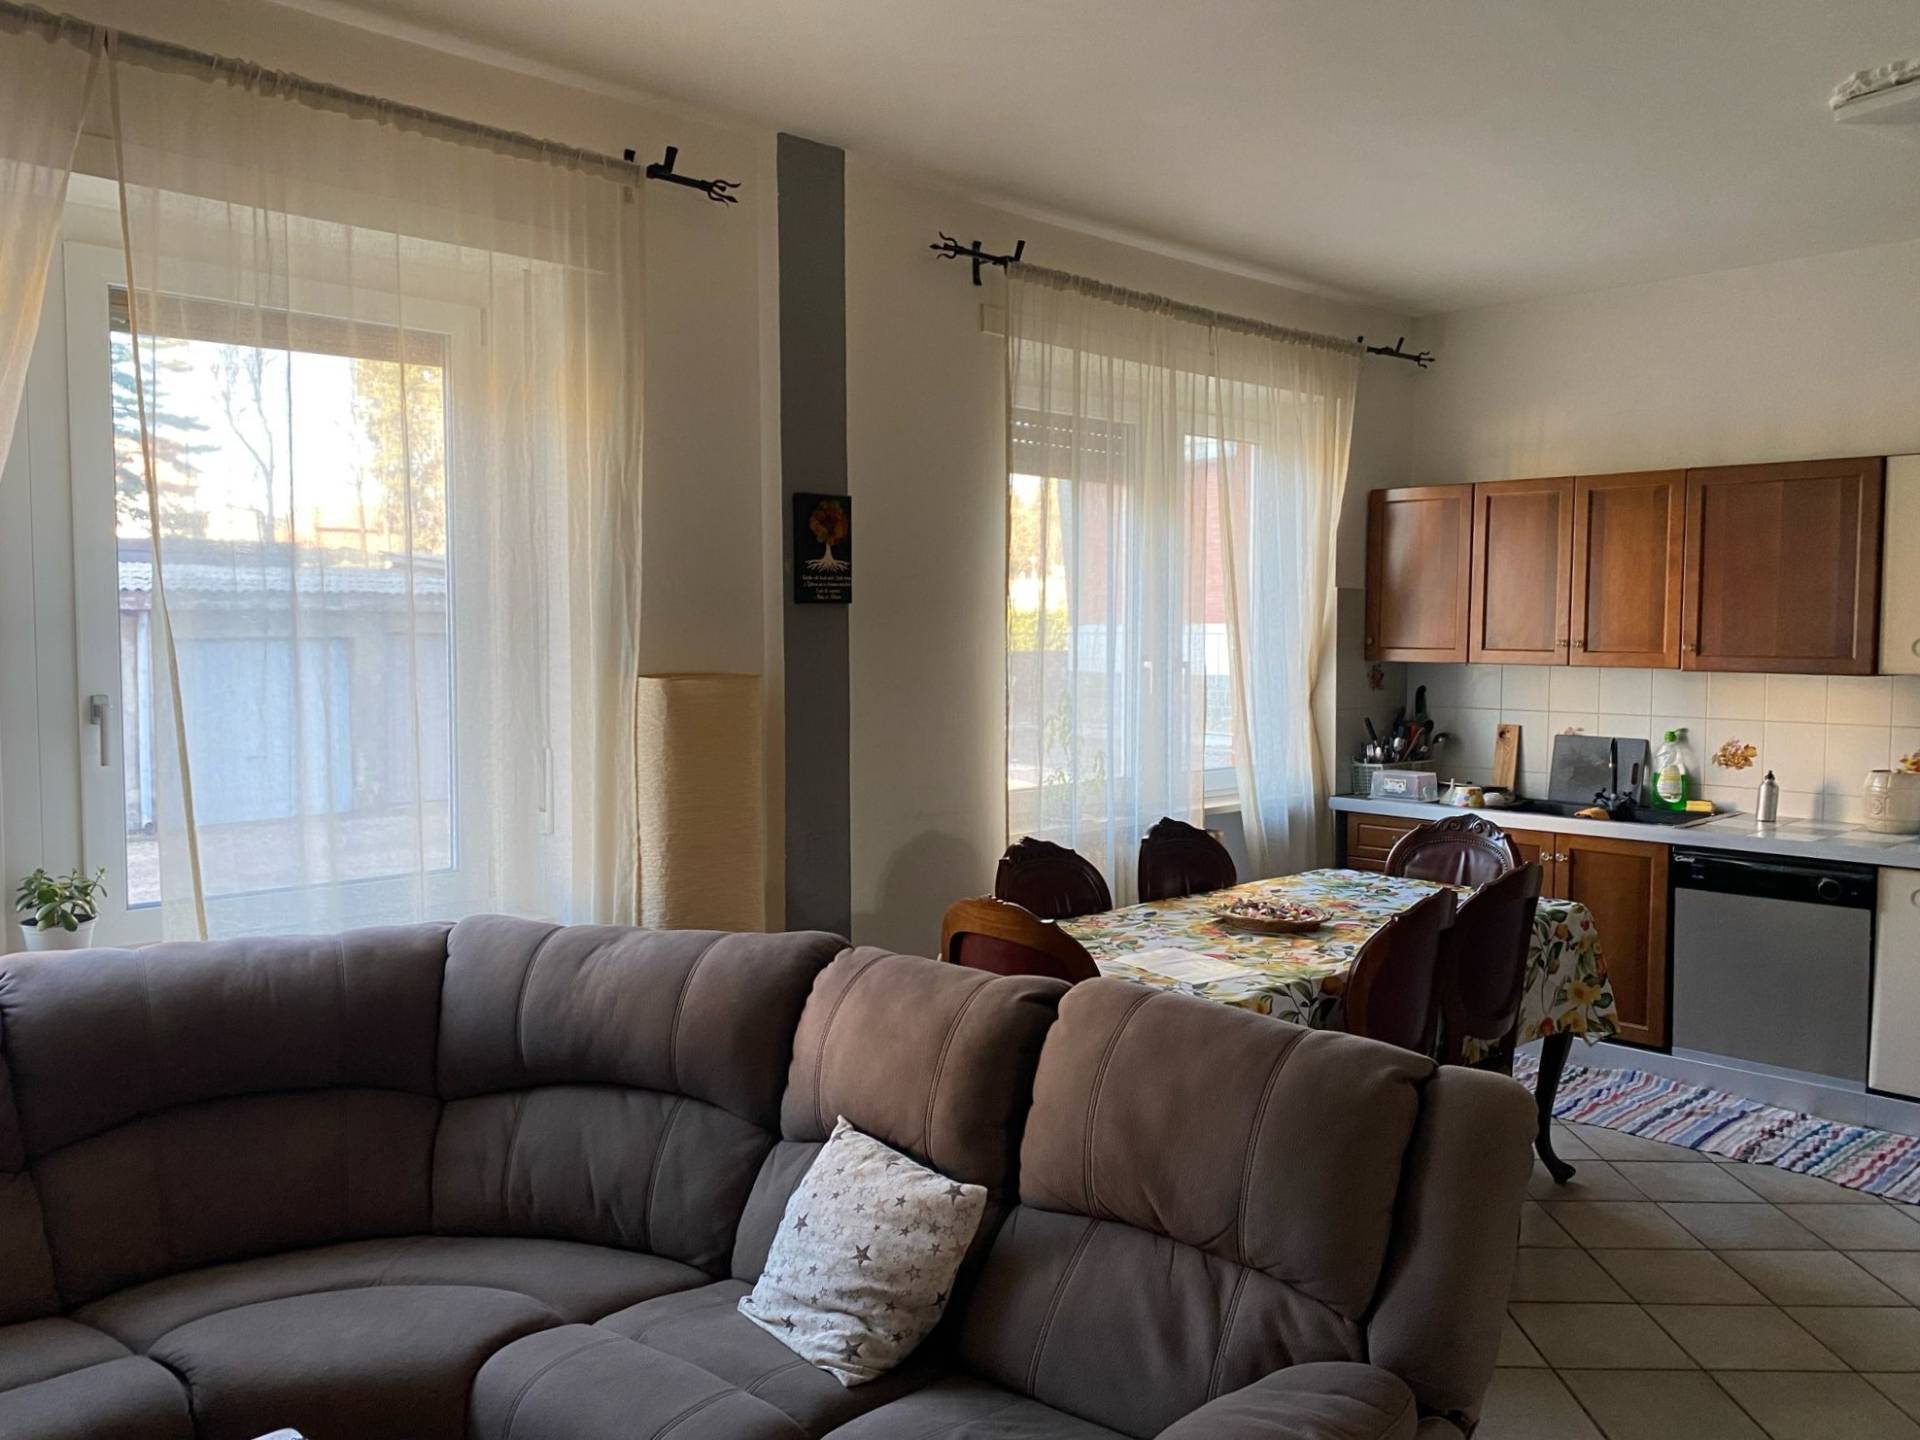 Appartamento in vendita a Caluso, 3 locali, zona Località: Caluso, prezzo € 50.000 | PortaleAgenzieImmobiliari.it